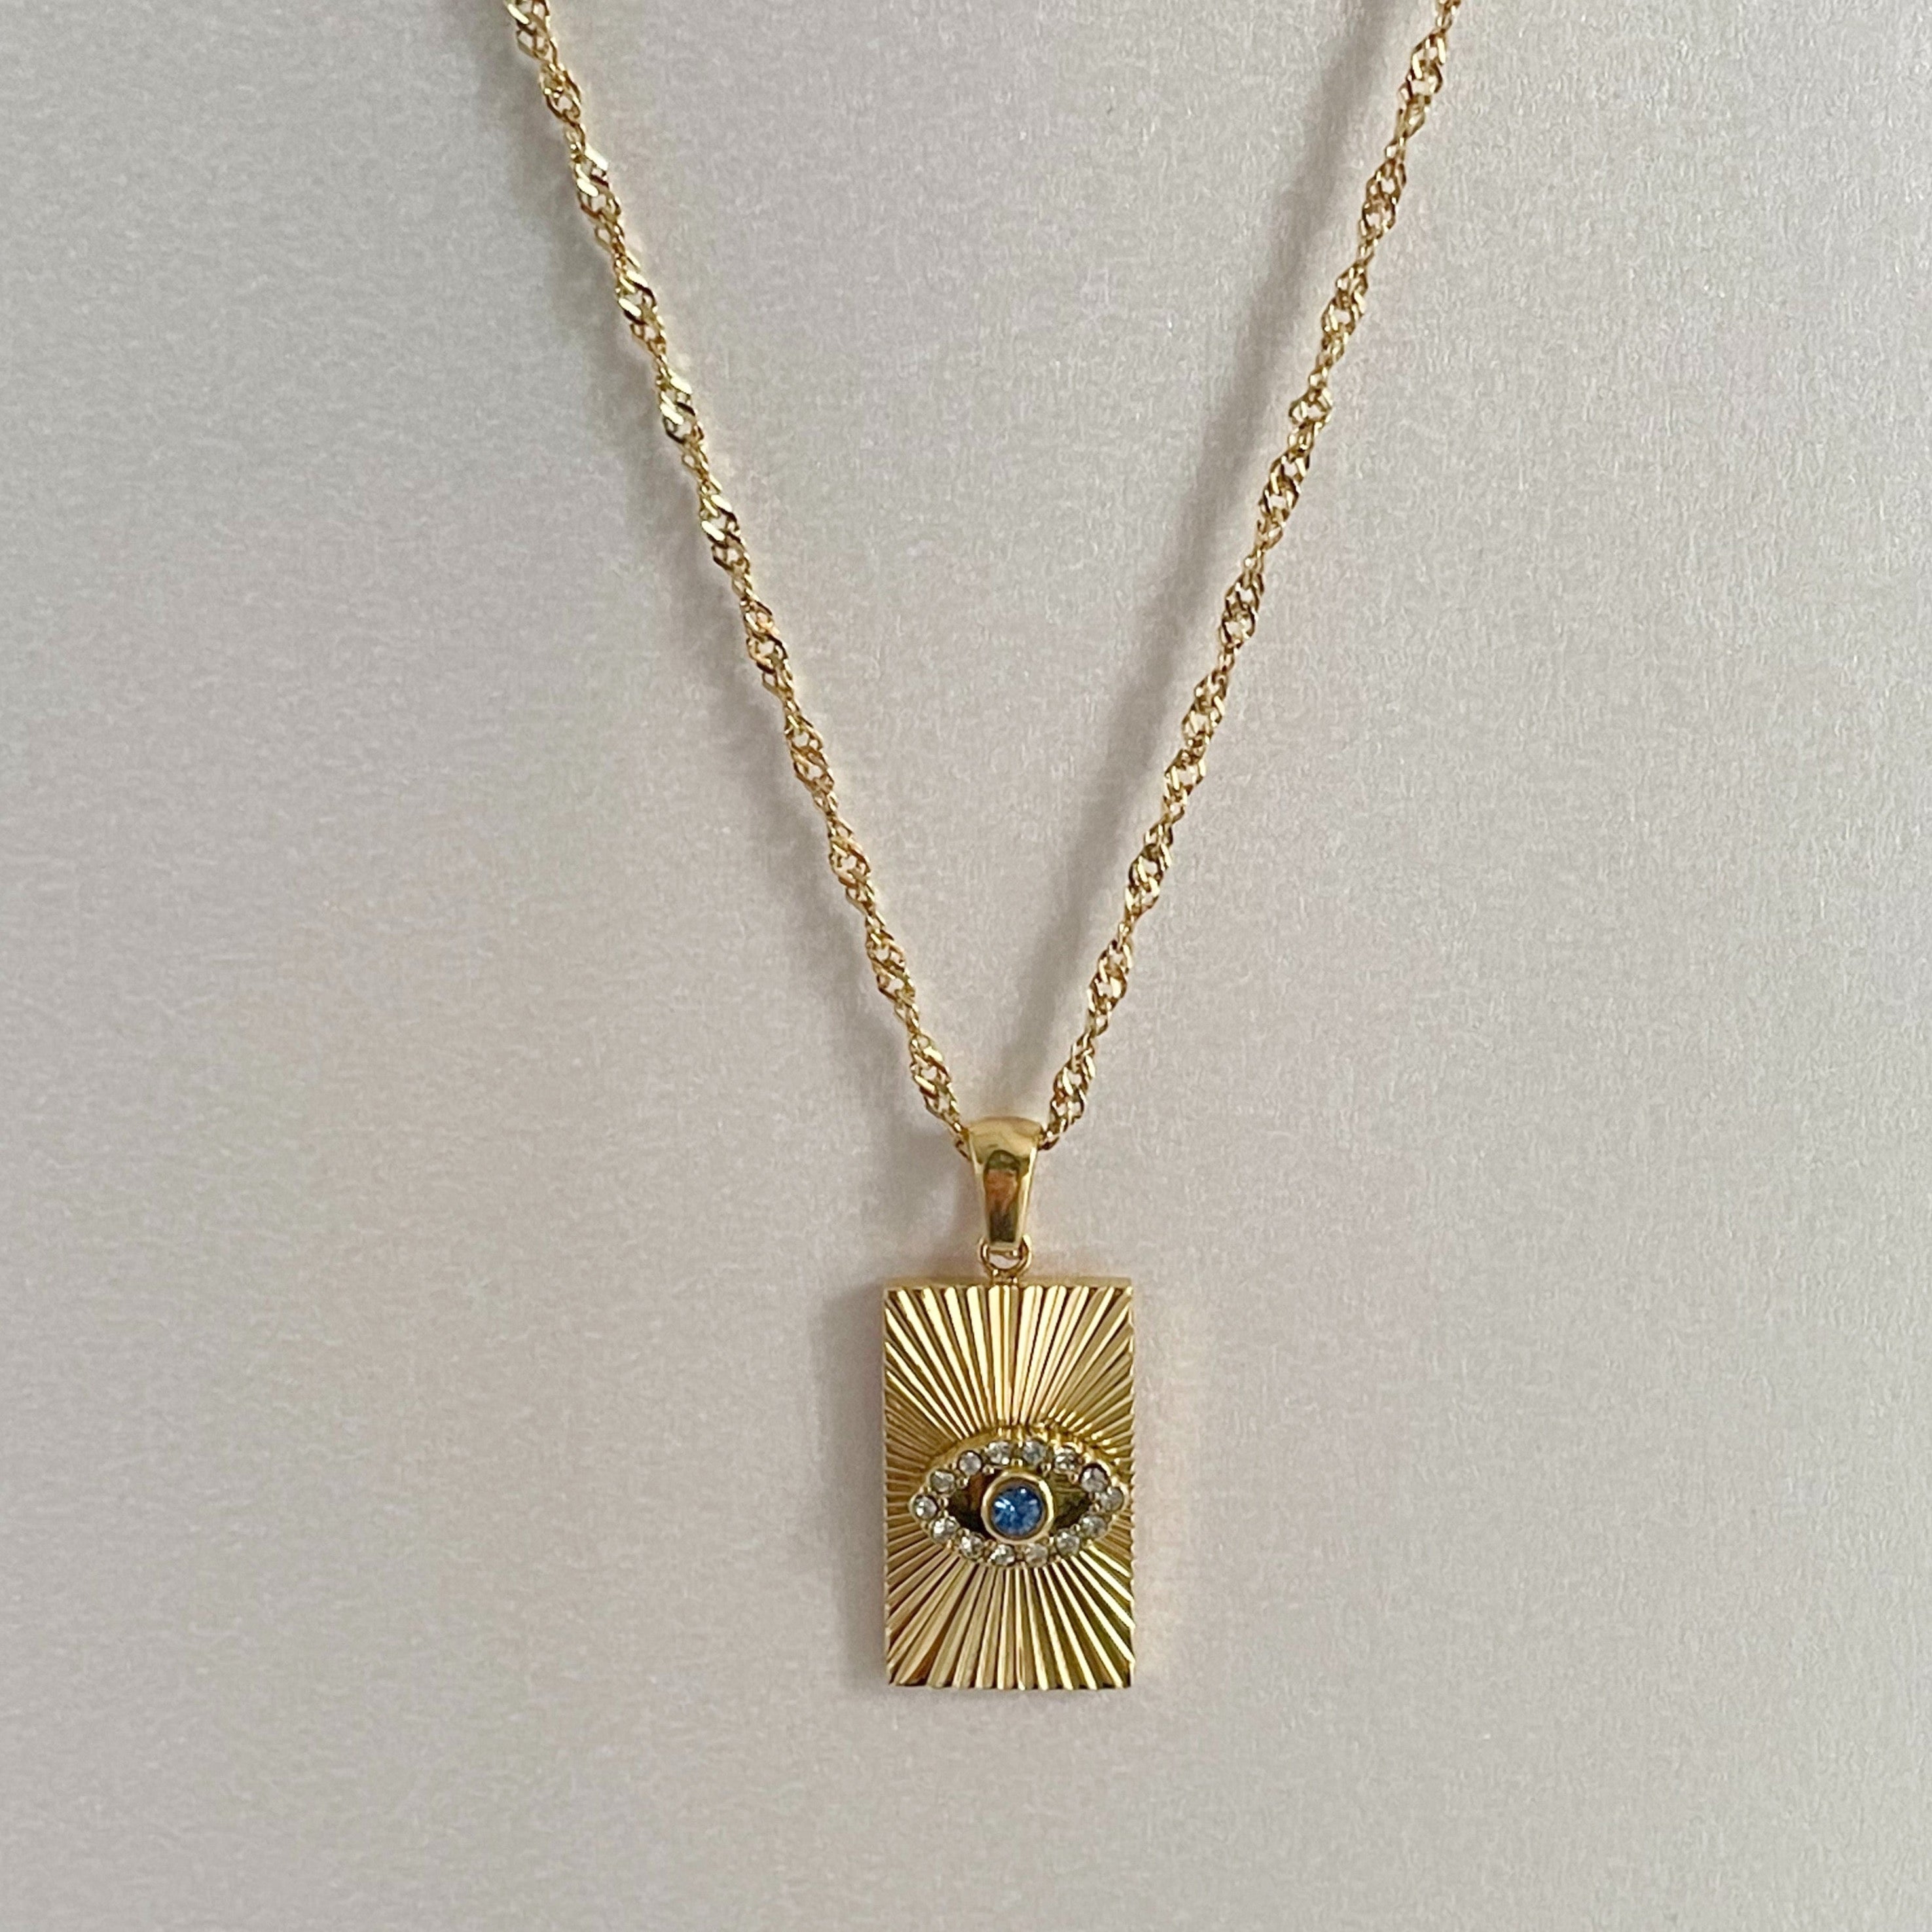 Domenique Luxe 18k Gold Pendant Necklace